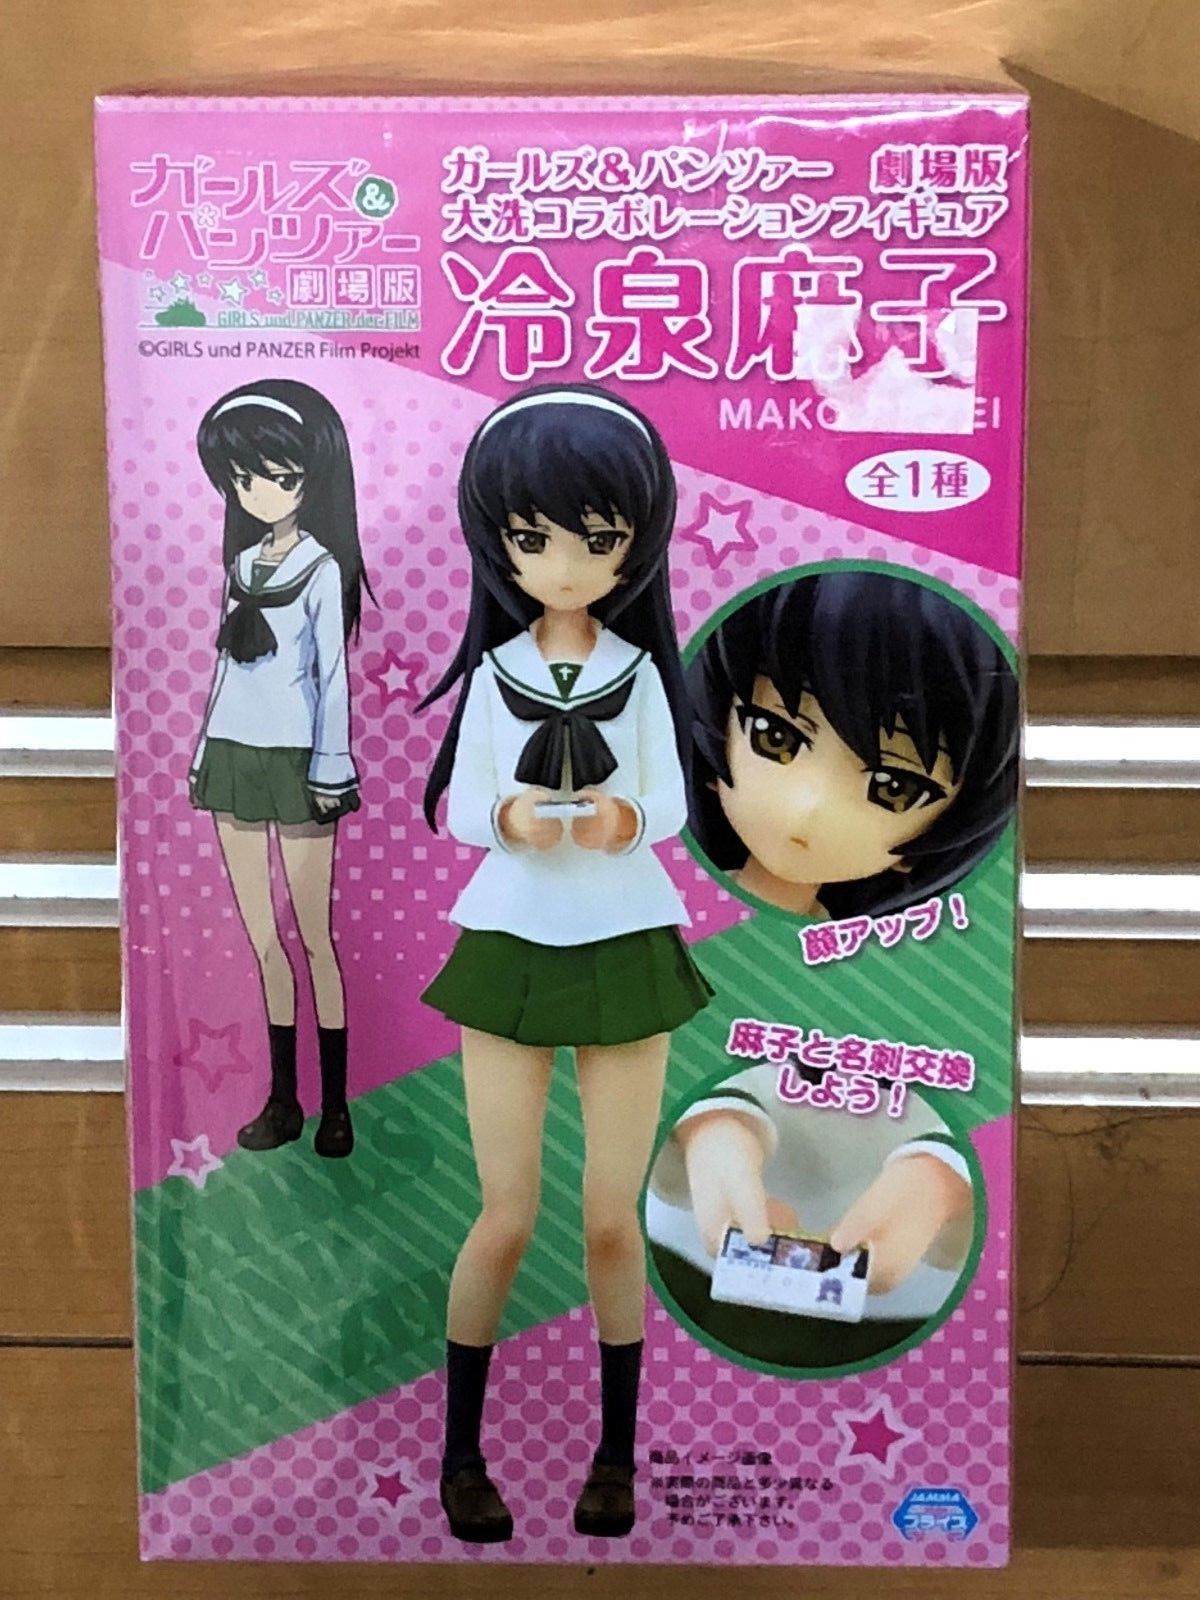 Mako Reizei, Movie Version Figure, Girls und Panzer, System Service